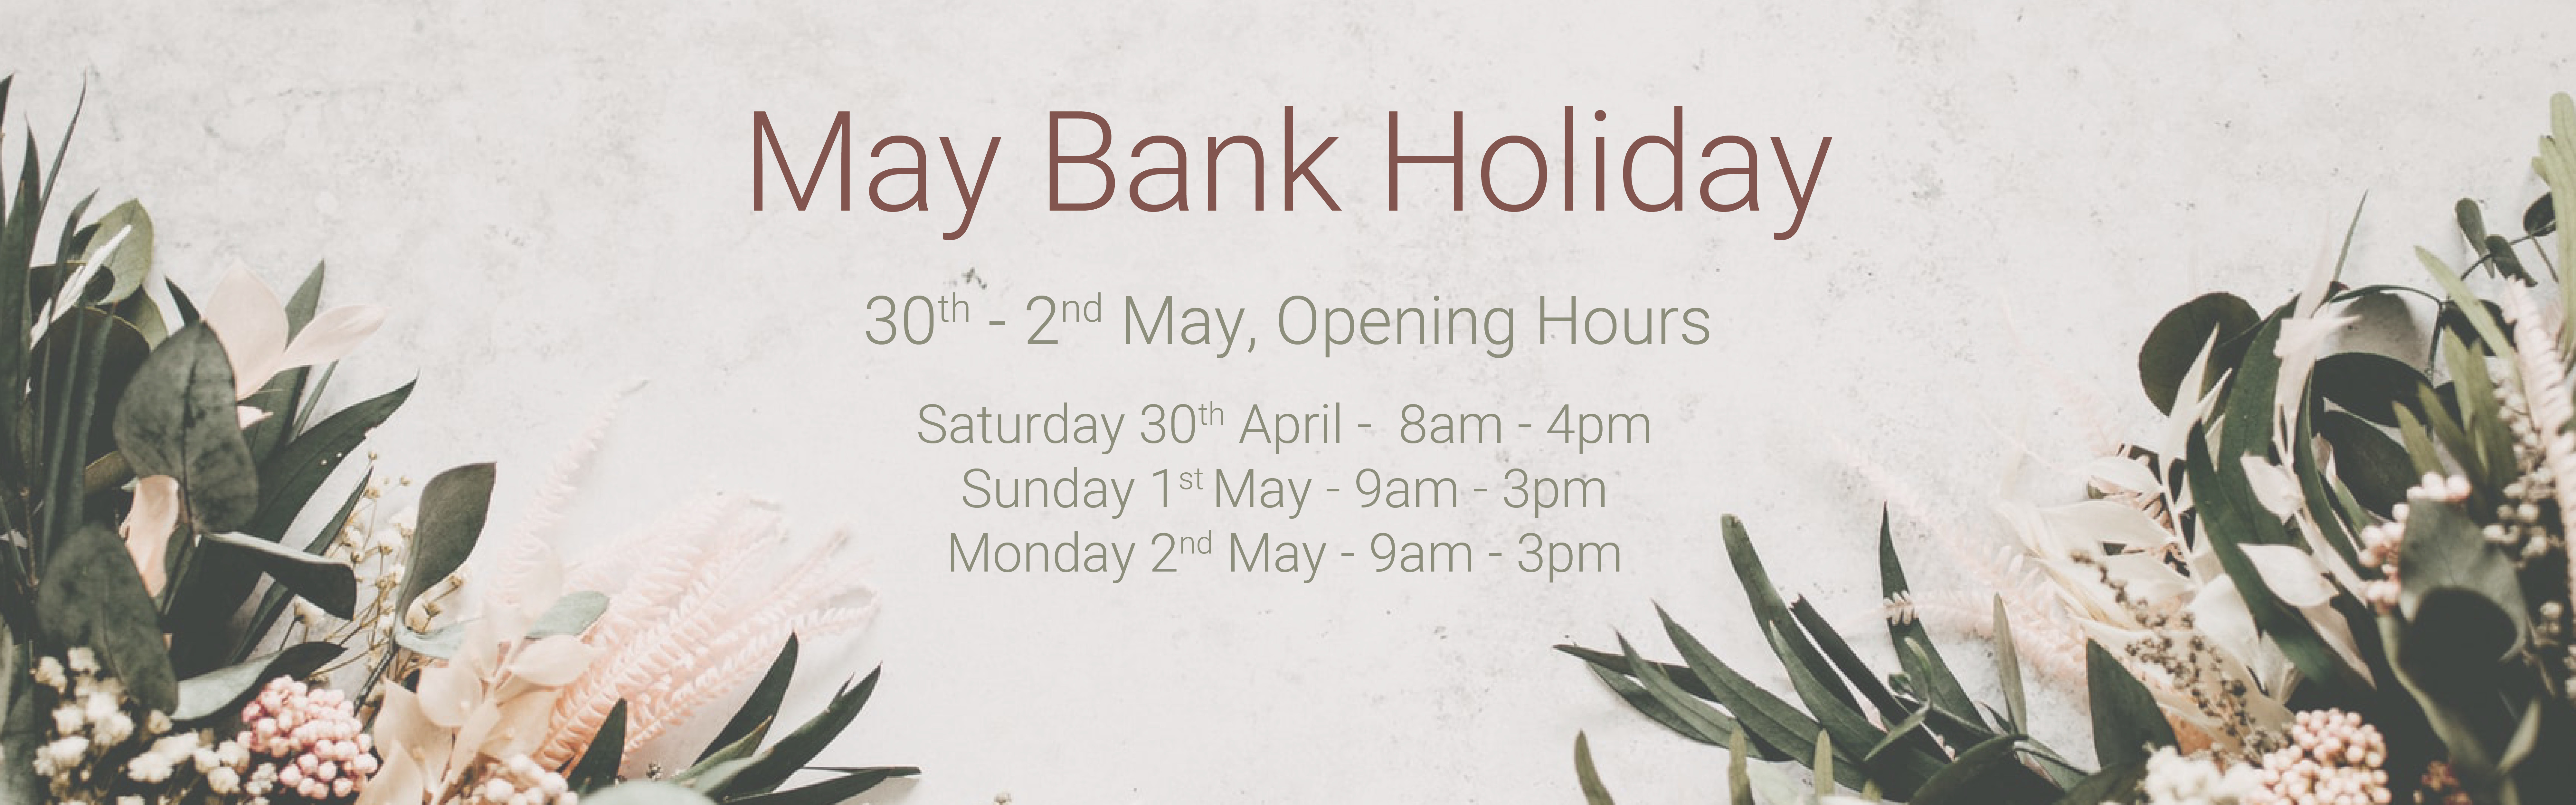 May Bank Holiday Hours